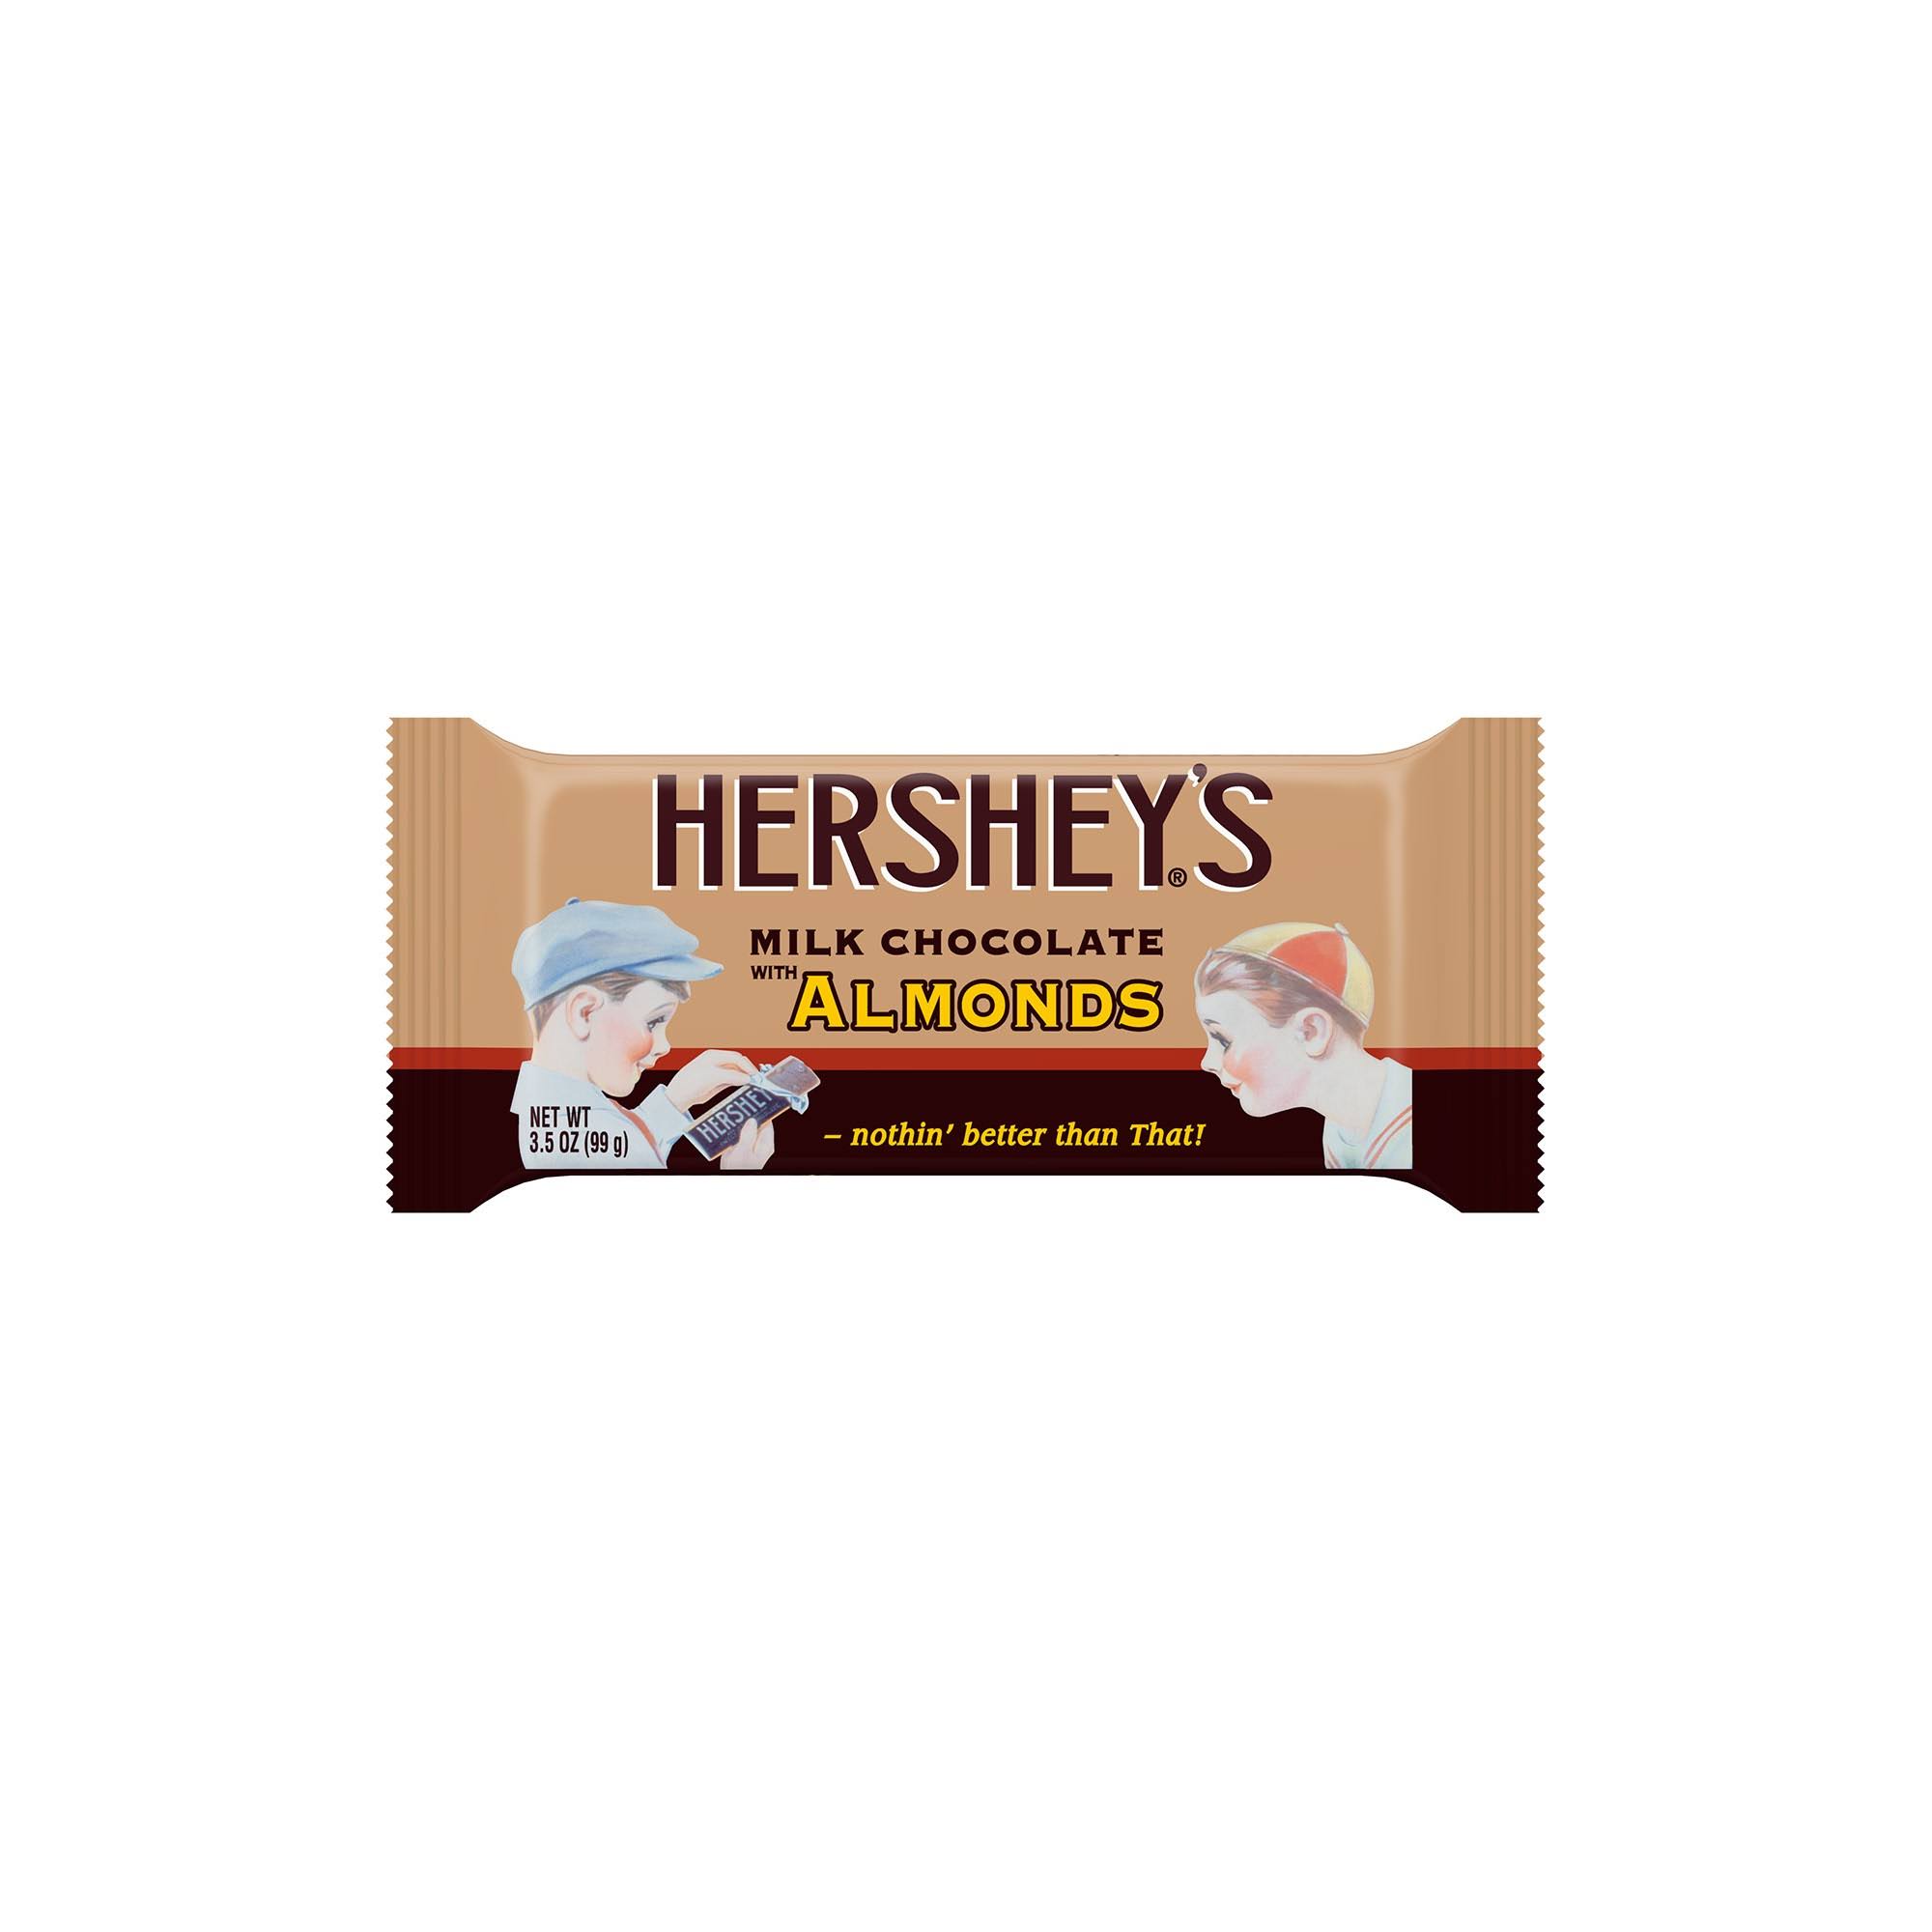 Hershey's Chocolate, Milk, with Almonds - 3.5 oz